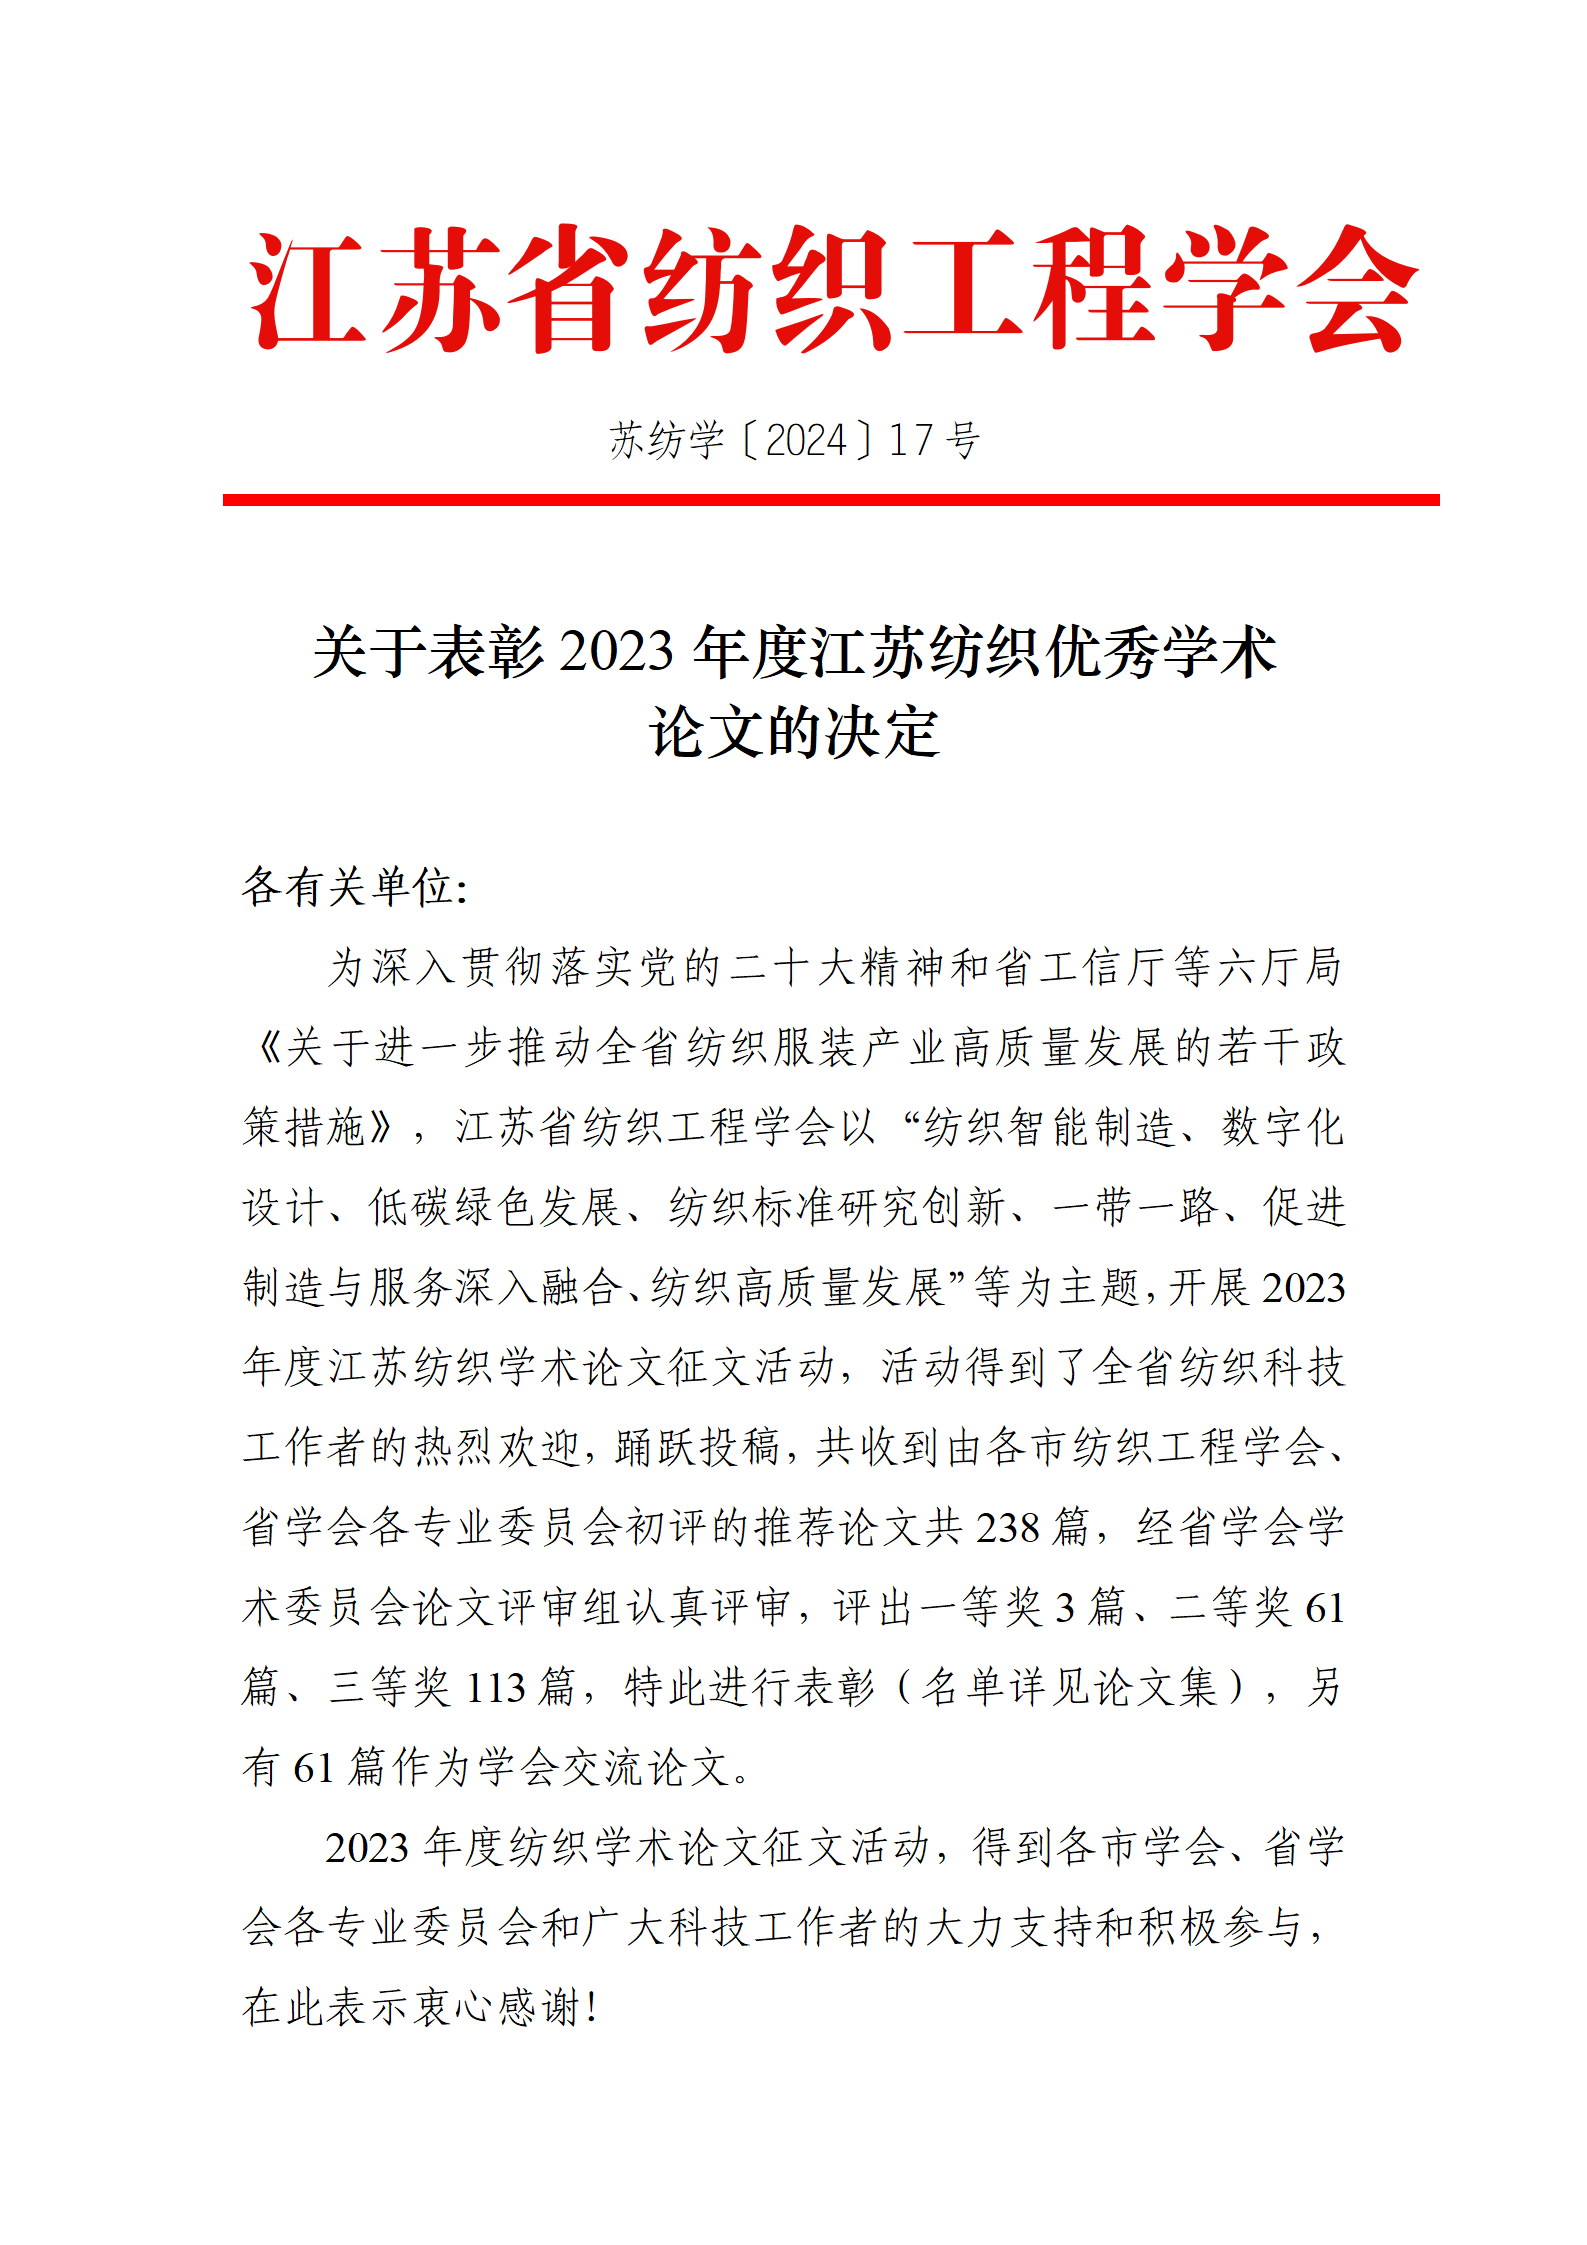 17号文：关于表彰2023年度江苏纺织优秀学术论文的决定（带章）_01.png